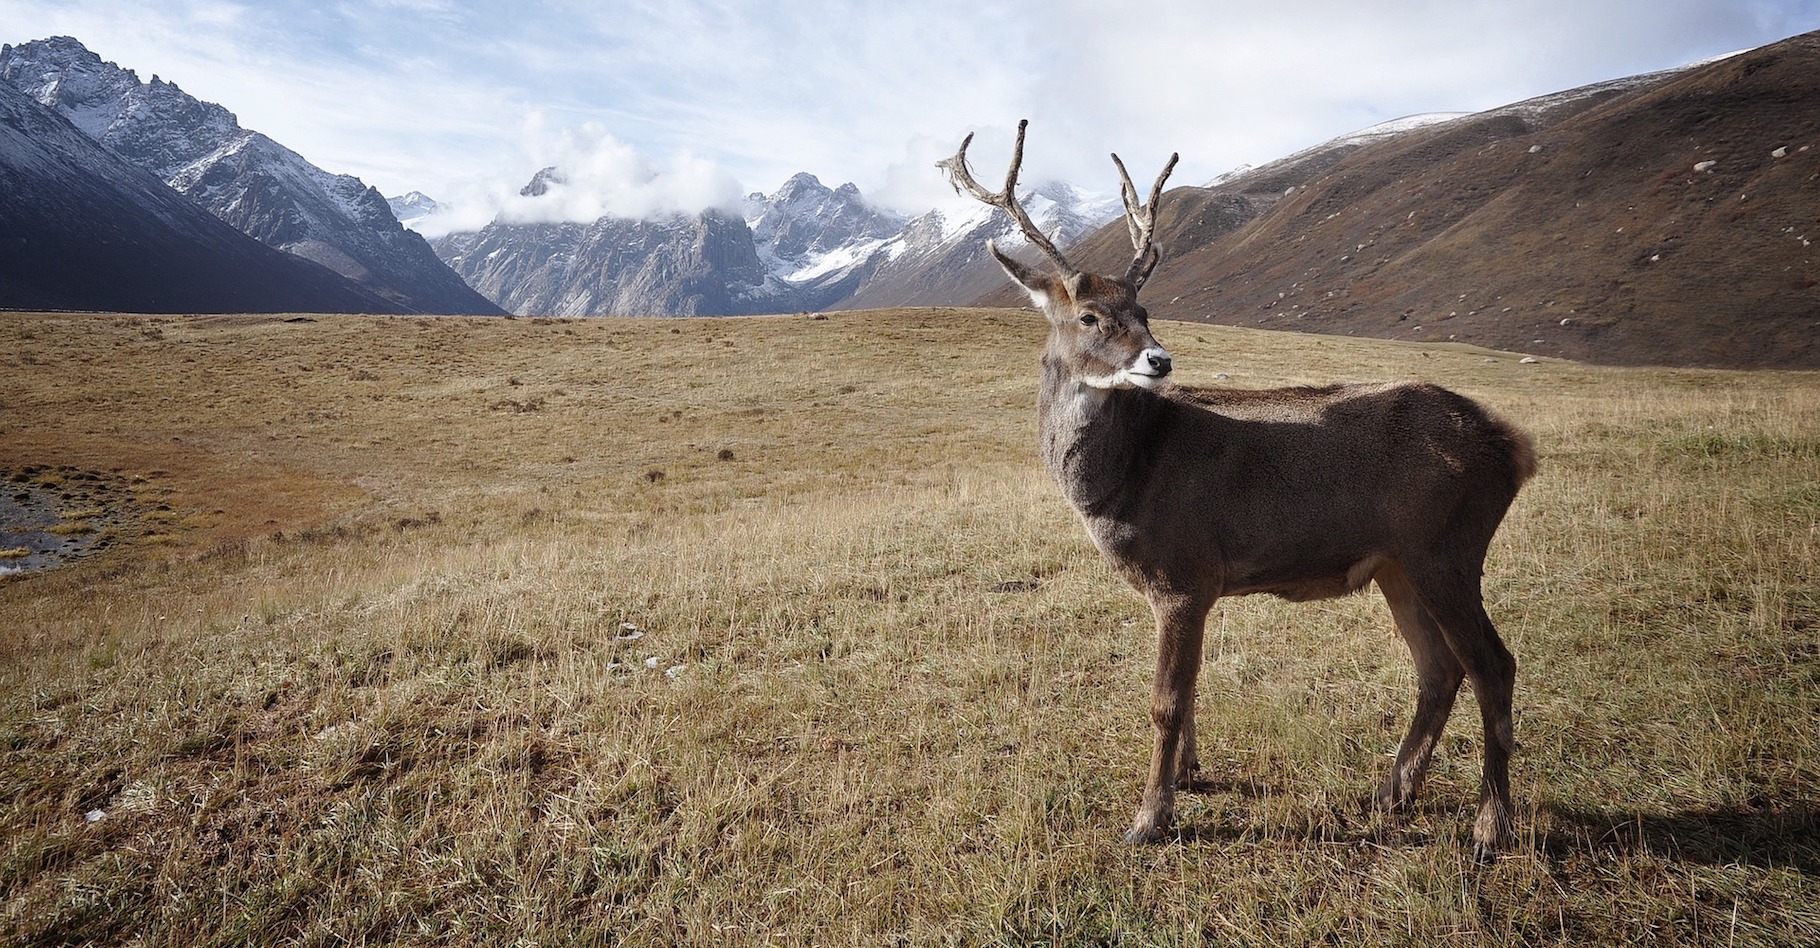 Au Canada, les caribous sont aujourd’hui menacés de disparition. Mais au cours de la dernière période glaciaire, ils étaient nombreux dans la région. Des mineurs en ont retrouvé un spécimen étonnamment bien conservé du côté du Yukon. © Free-Photos, Pixabay, DP